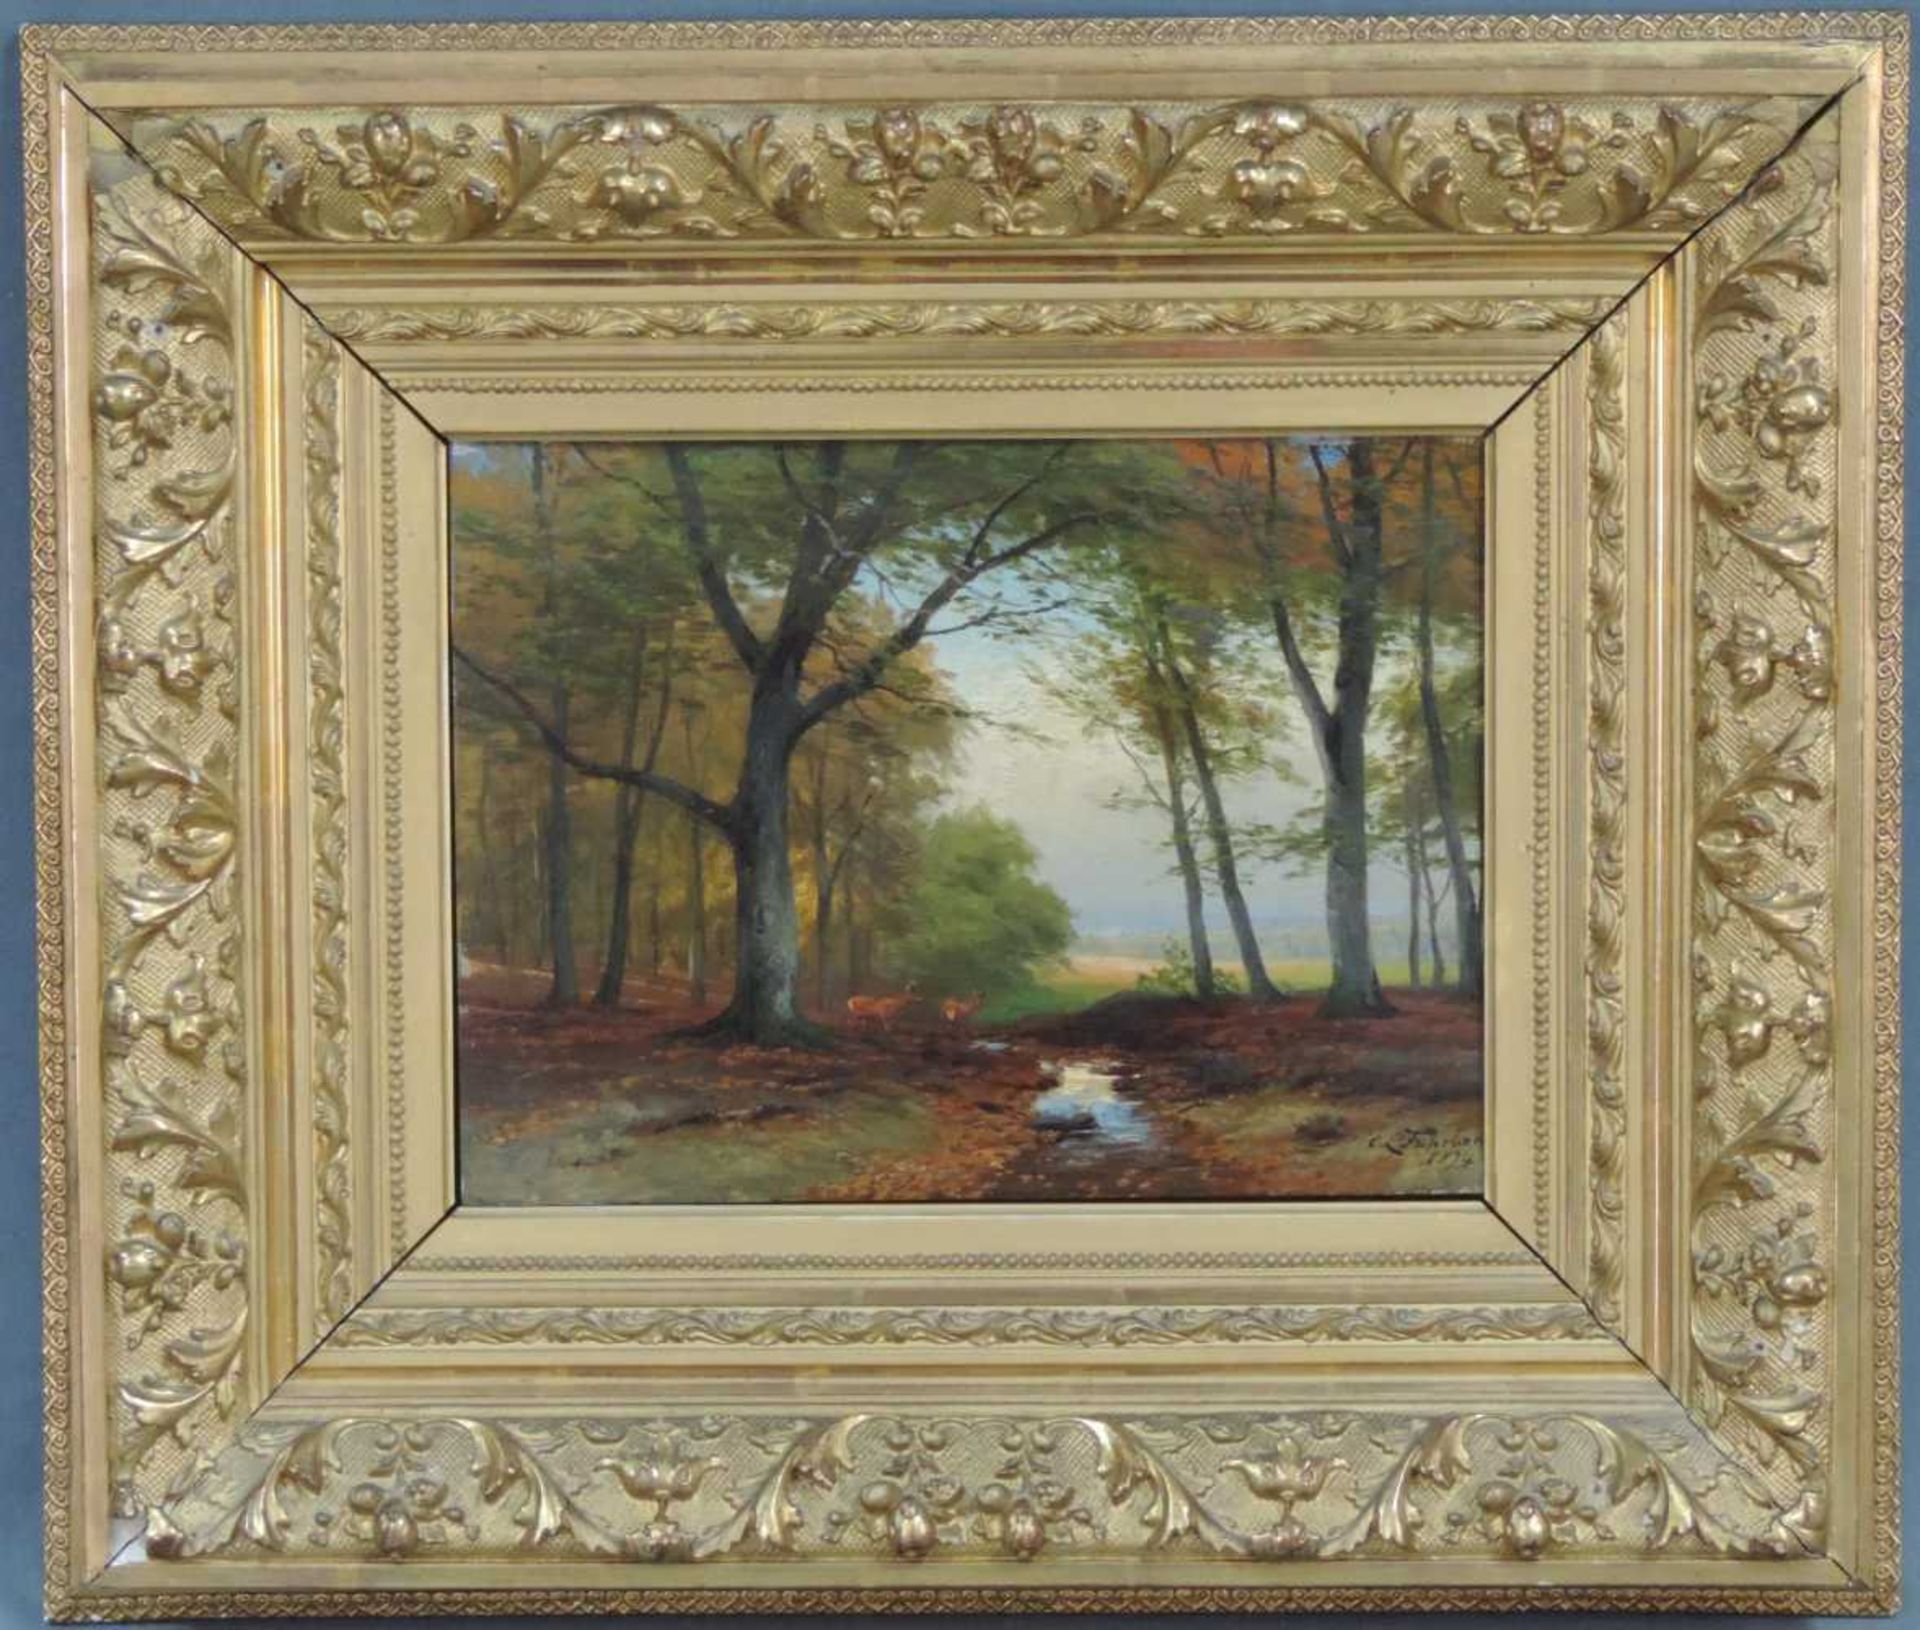 Carl Ludwig FAHRBACH (1835 - 1902). Rehe am Waldbach 1894. 36 cm x 44 cm. Gemälde, Öl auf Holz.